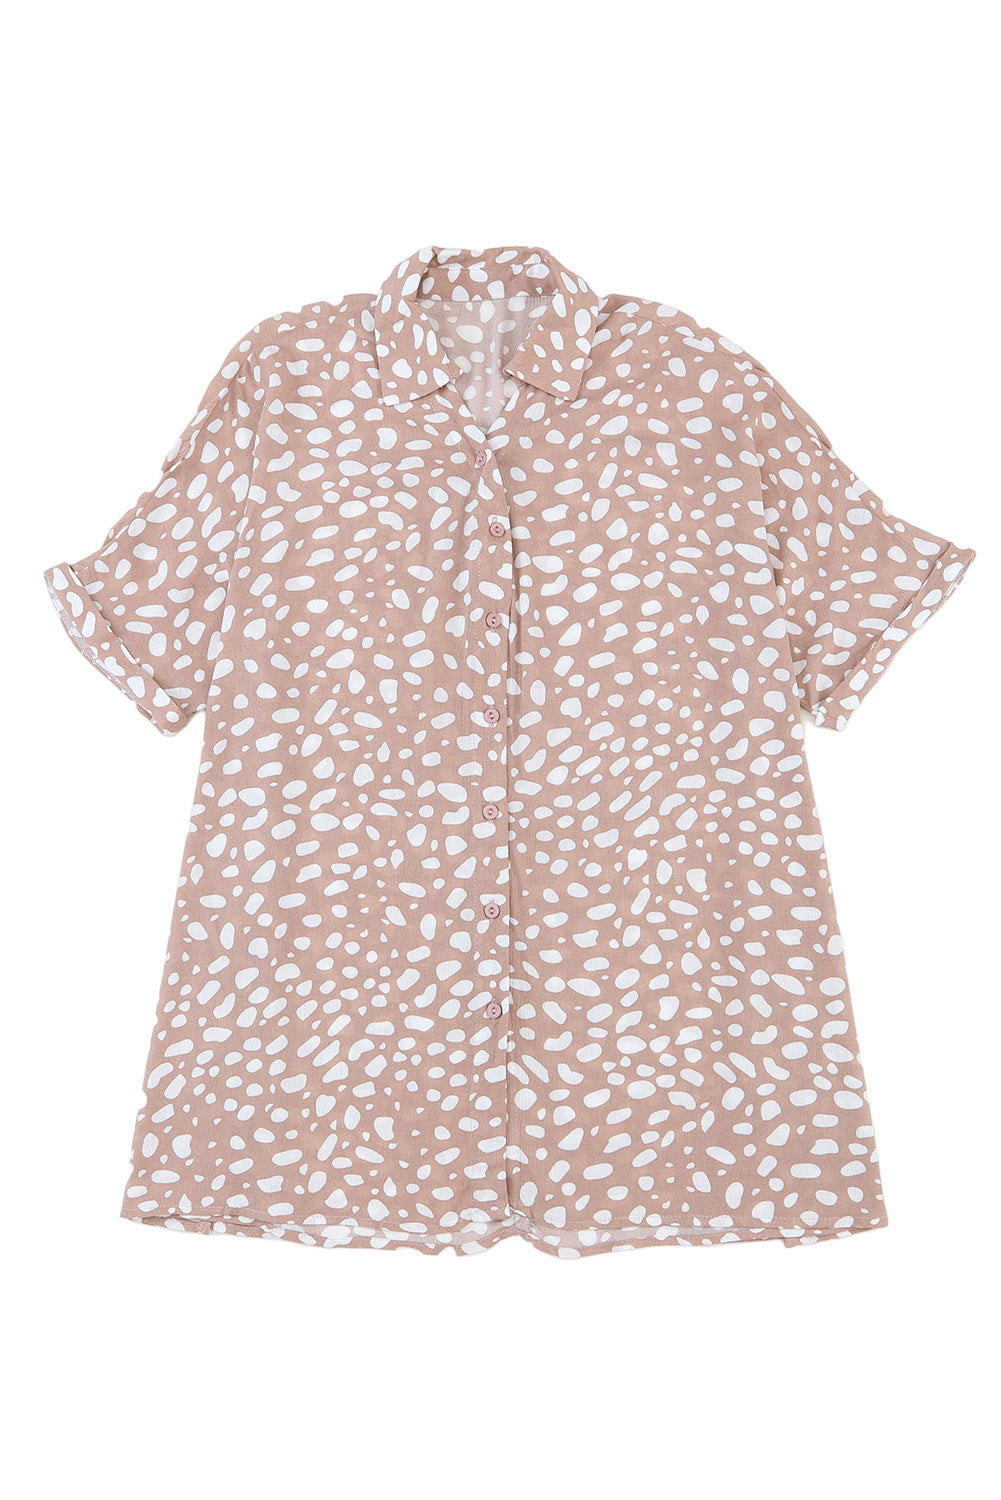 Camicia twist a maniche corte stampata leopardo rosa